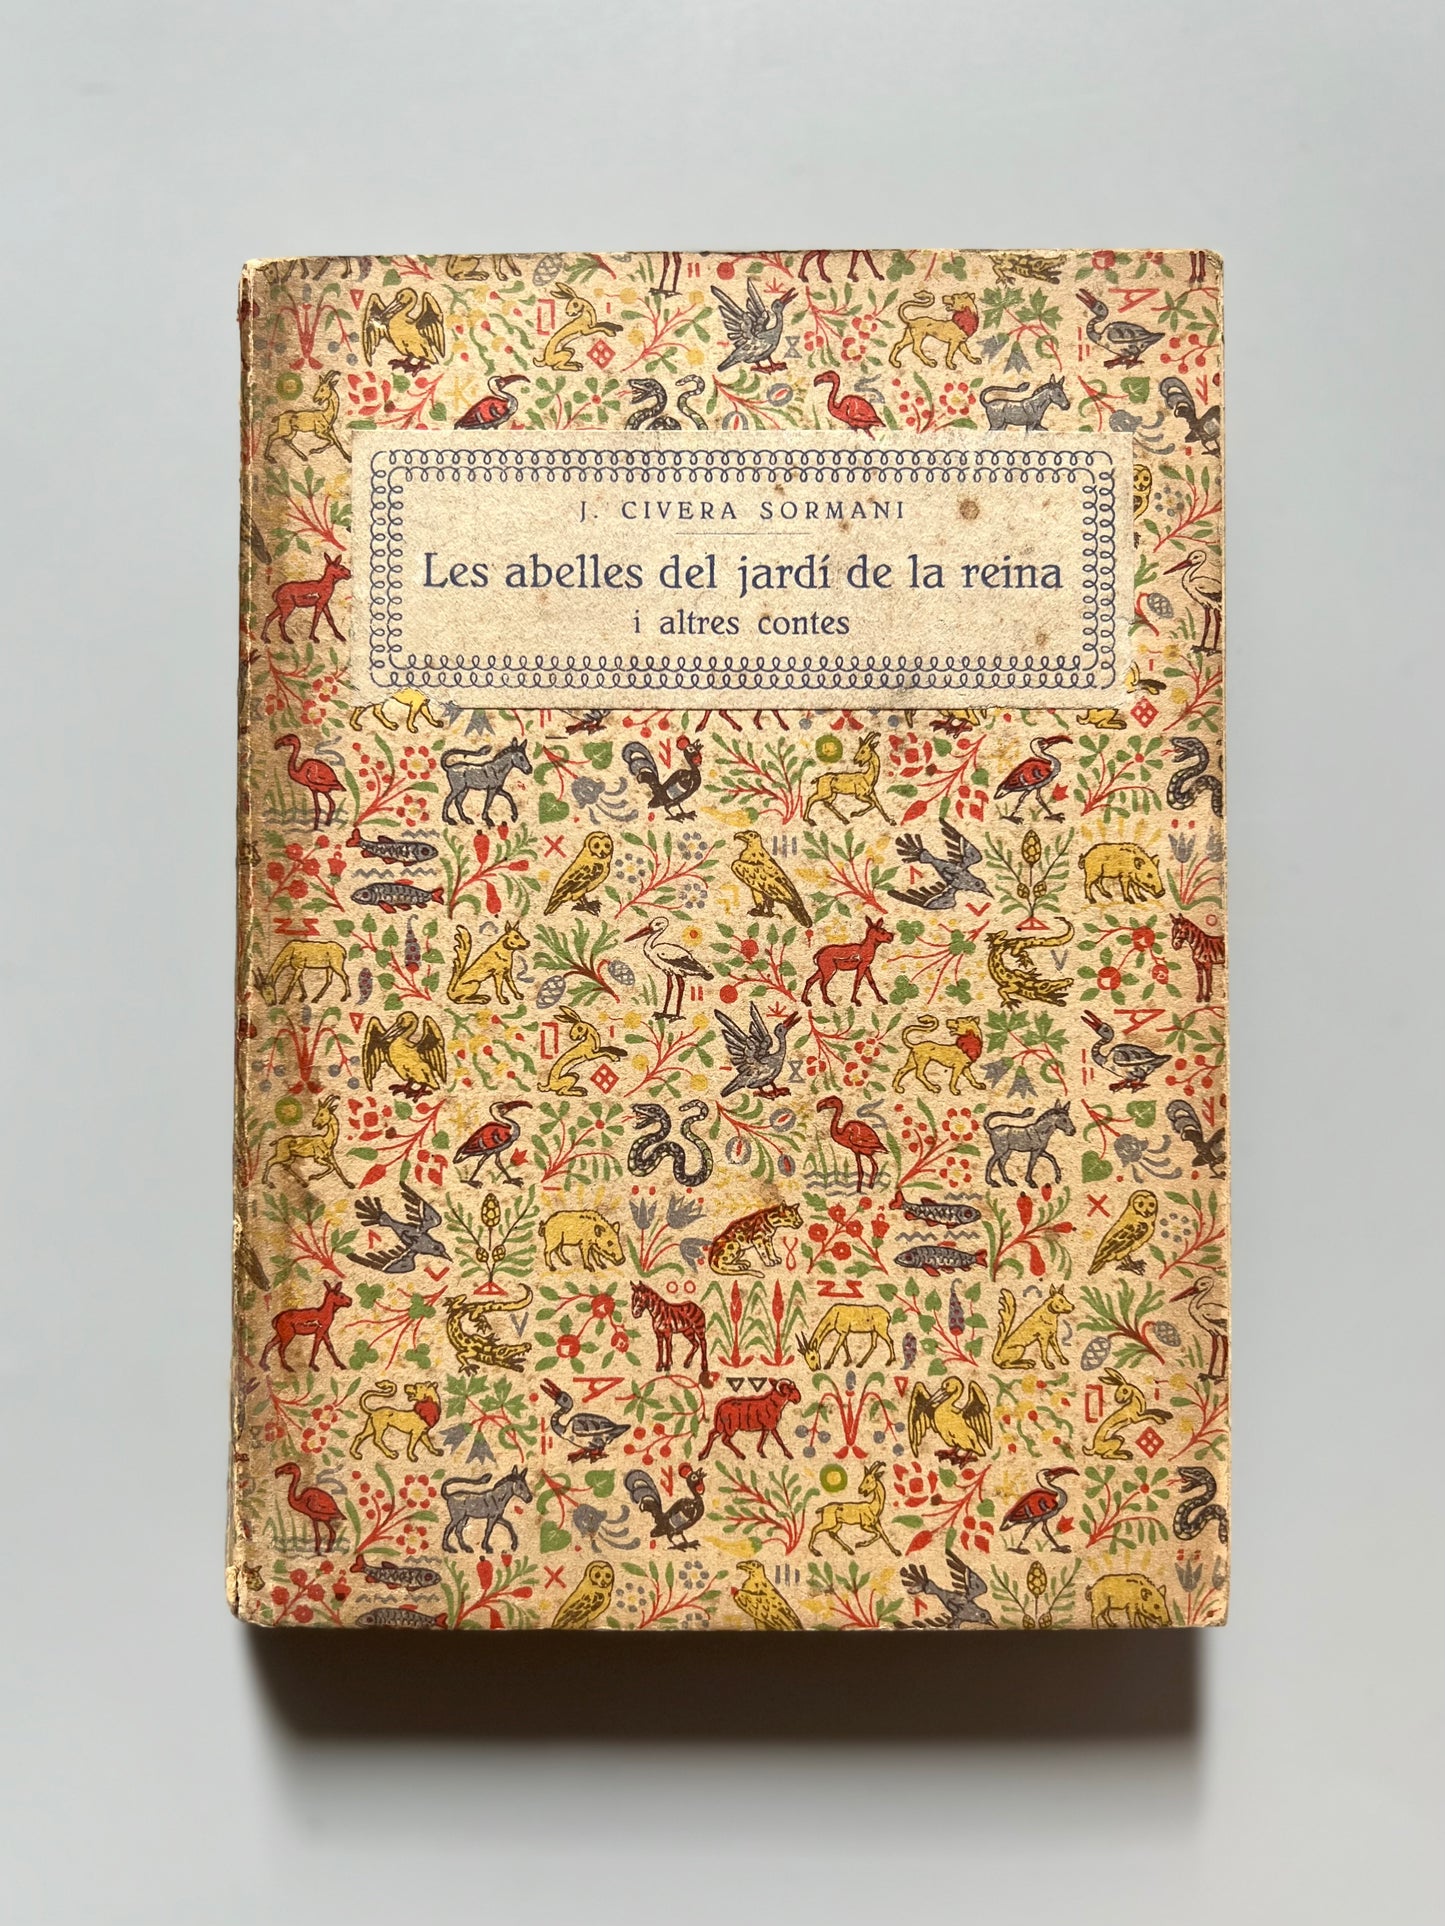 Les abelles del jardí de la reina i altres contes, J. Civera Sormani - Imp. Editorial Manresa, 1925